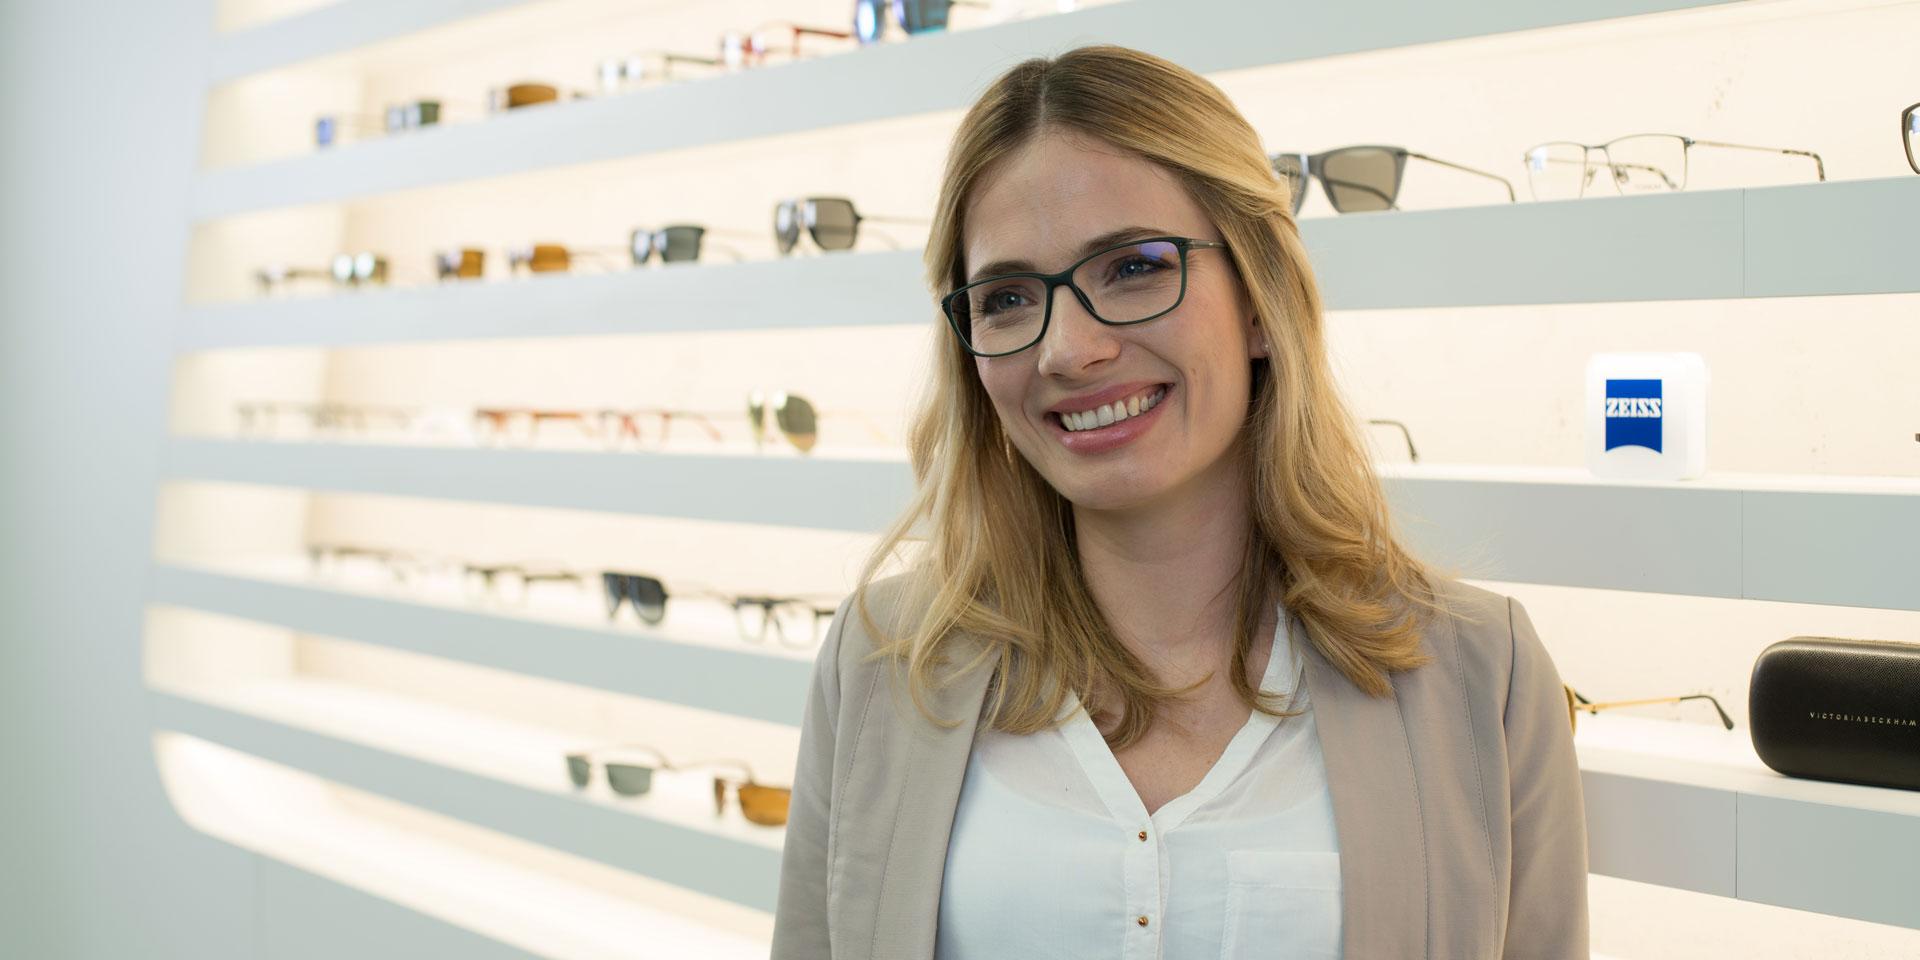 Vinkkejä silmälasien ostamiseen: kuinka löydät itsellesi oikeat lasit